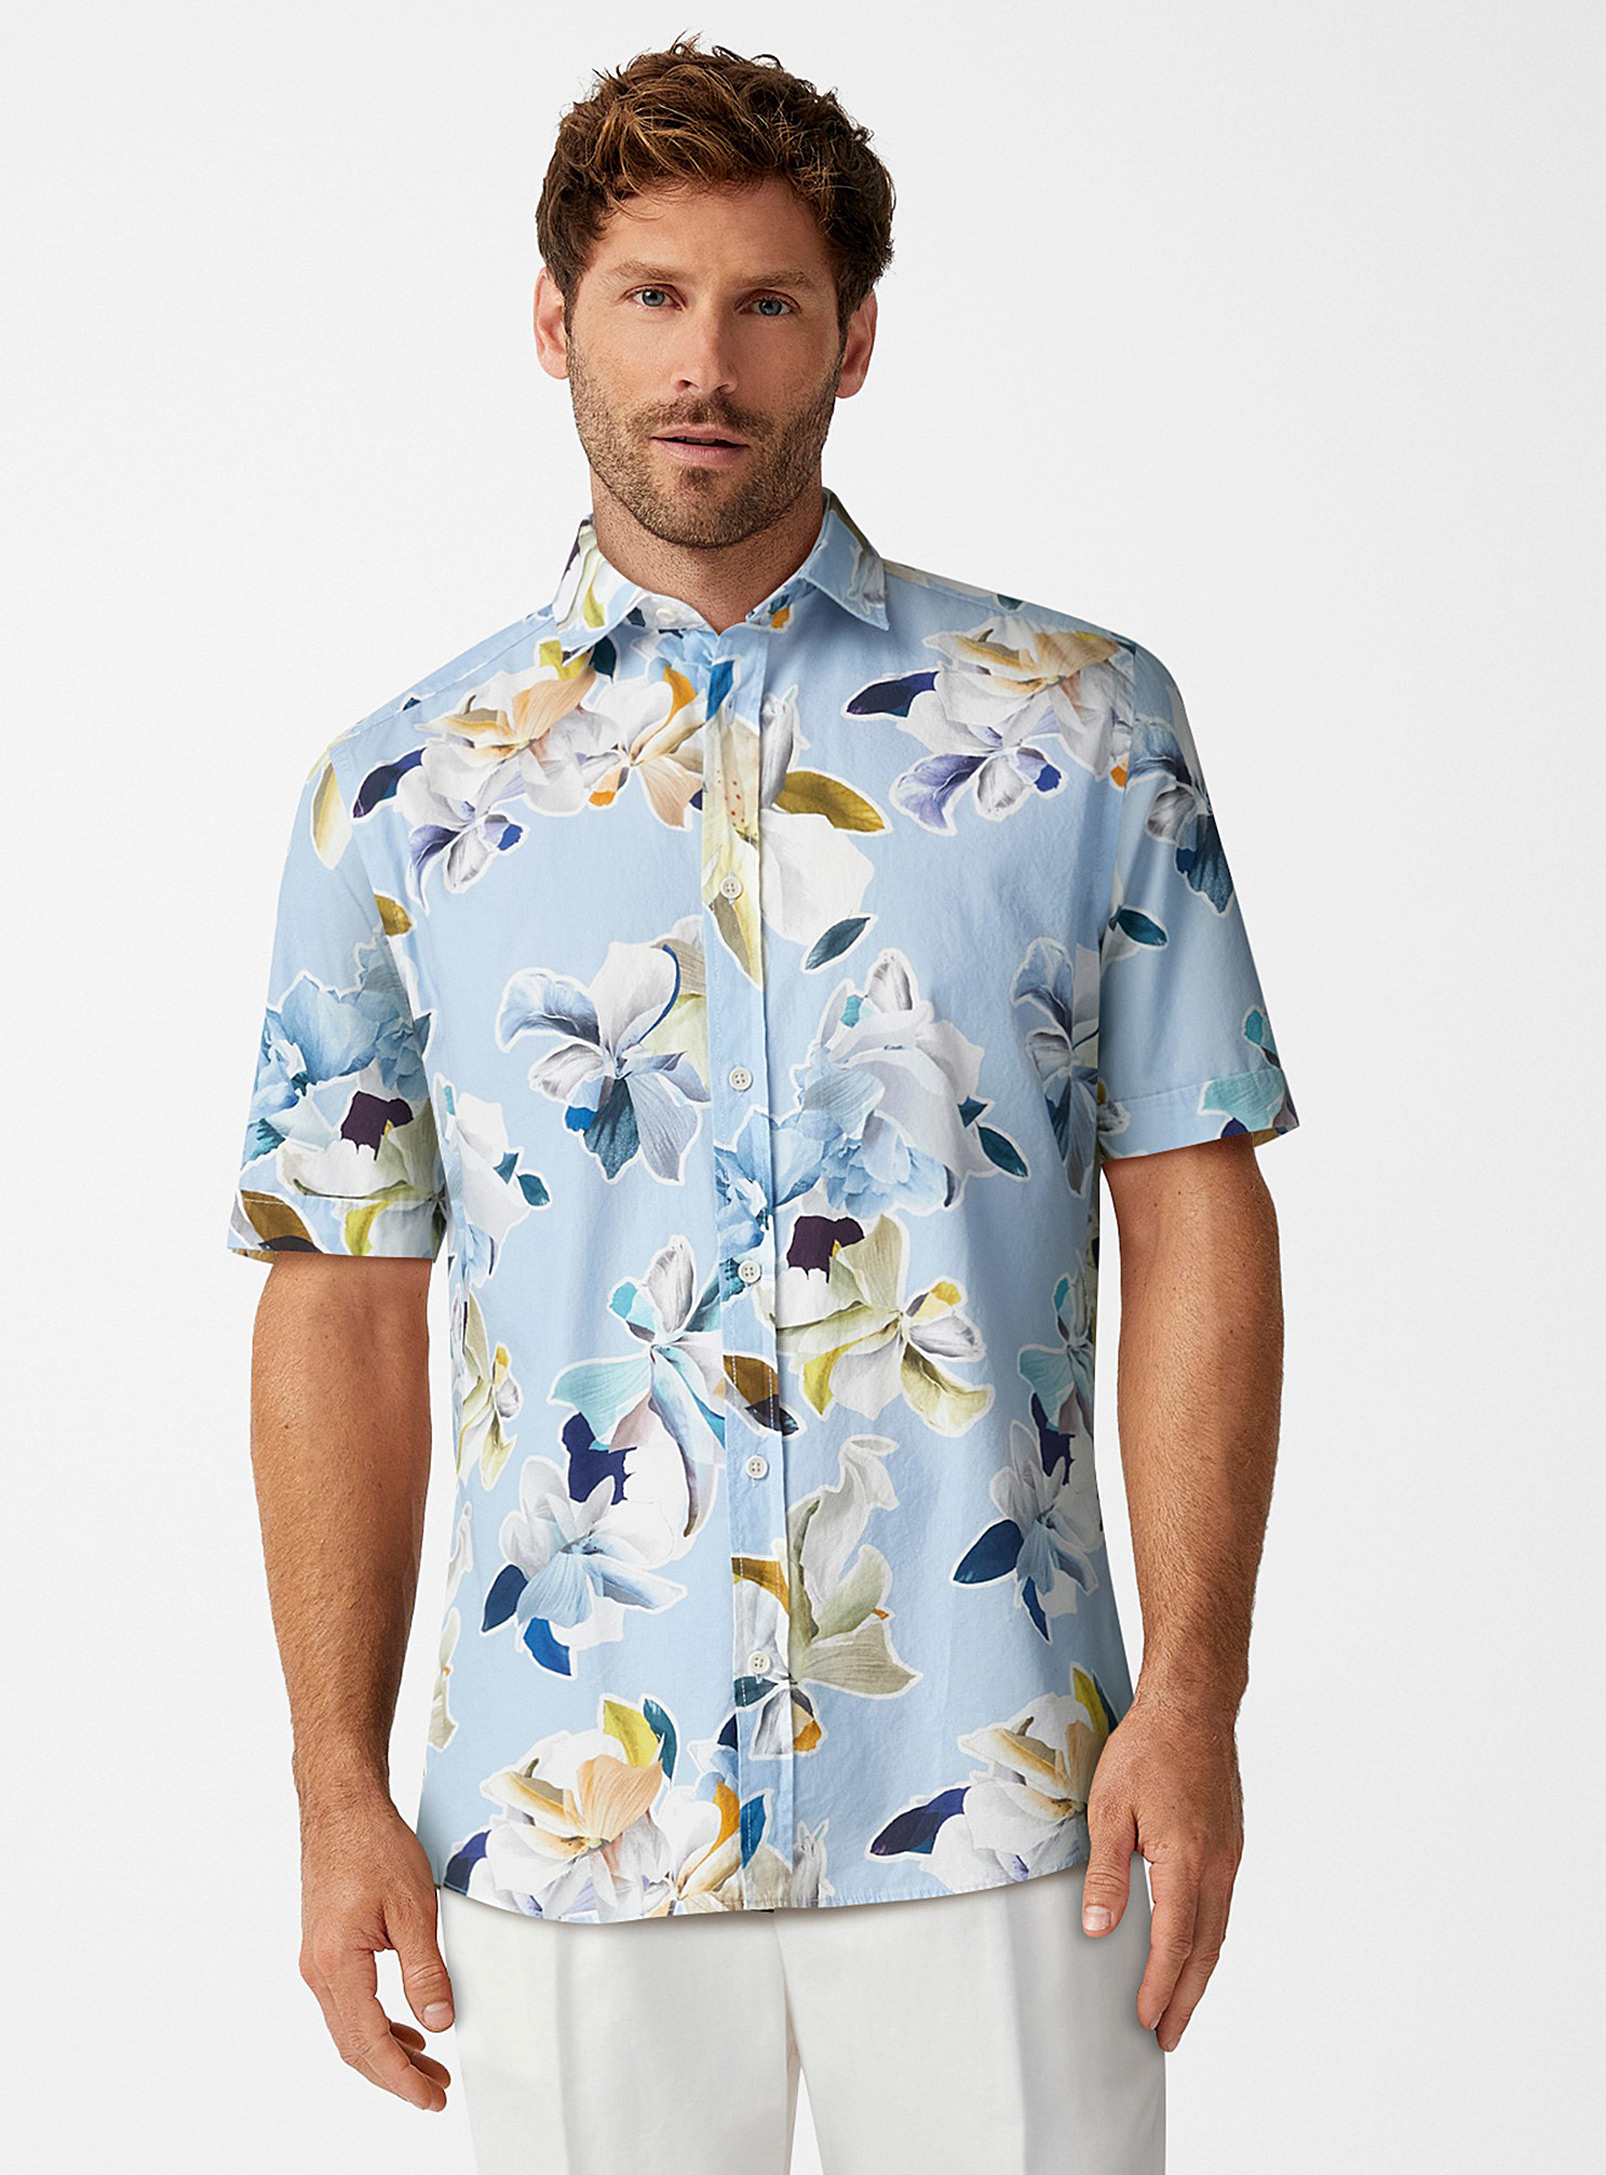 Olymp - Men's Exotic flower shirt